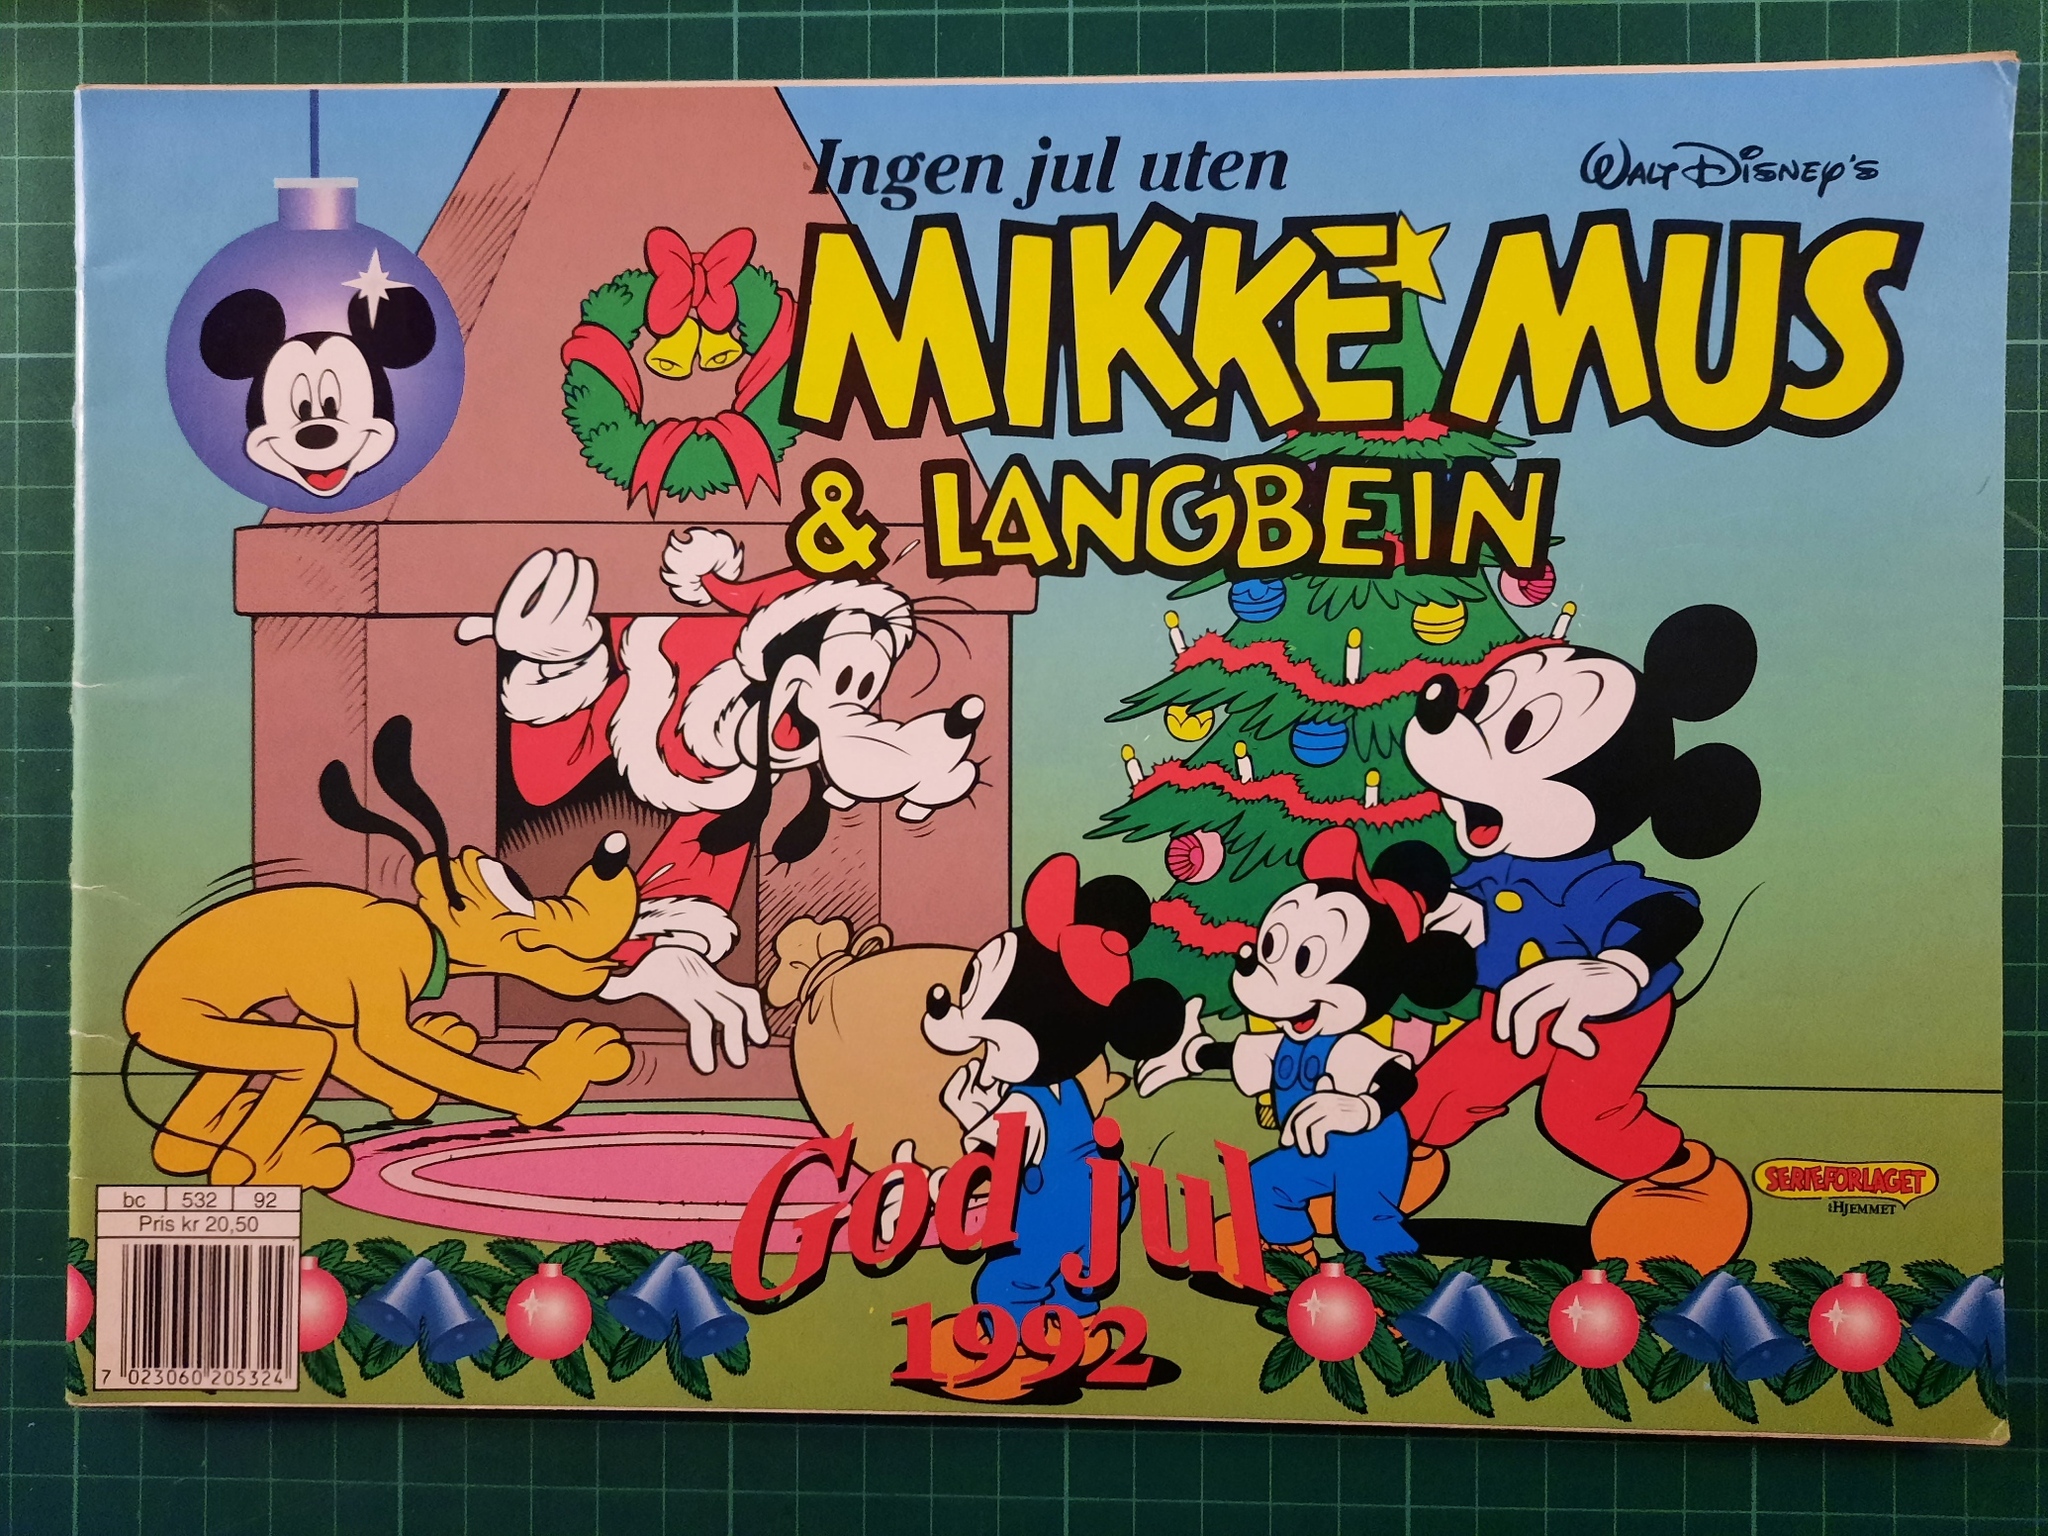 Mikke Mus & Langbein 1992